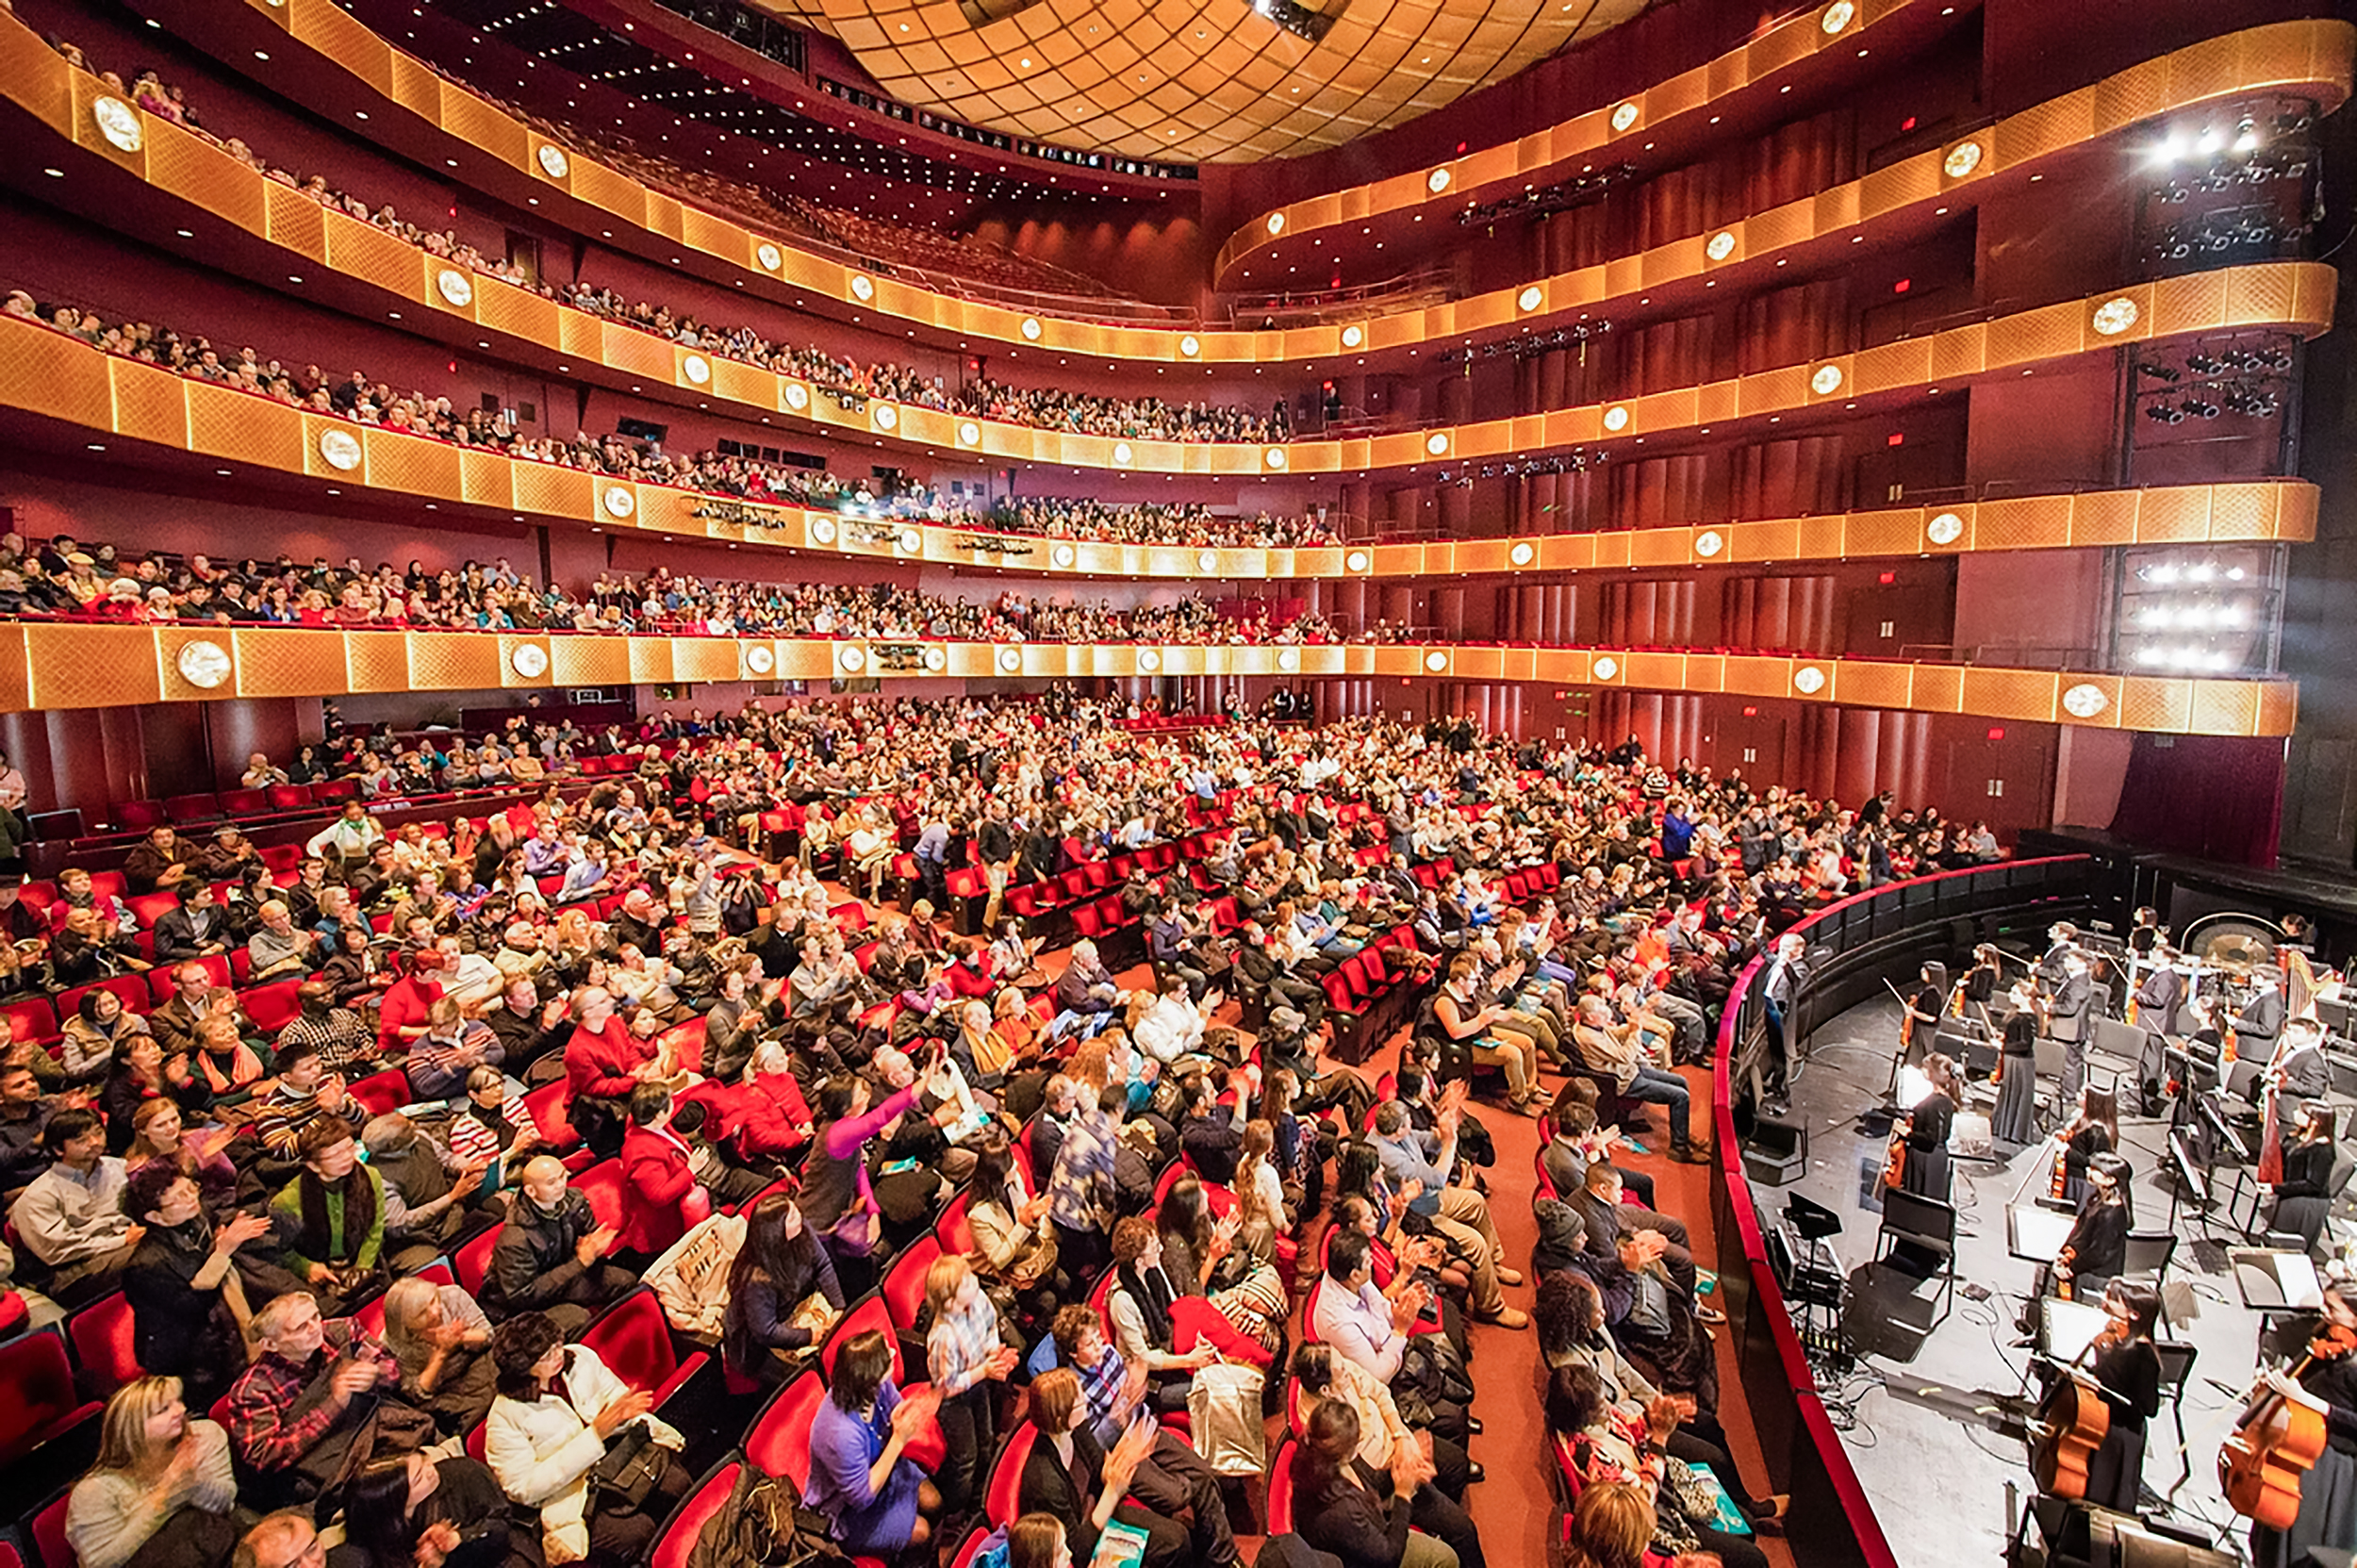 Đoàn Nghệ thuật Biểu diễn Shen Yun chào khán giả trước khi hạ màn tại Nhà hát David H. Koch ở Trung tâm Lincoln, New York vào ngày 11/01/2015. (Ảnh: Larry Dai/The Epoch Times)